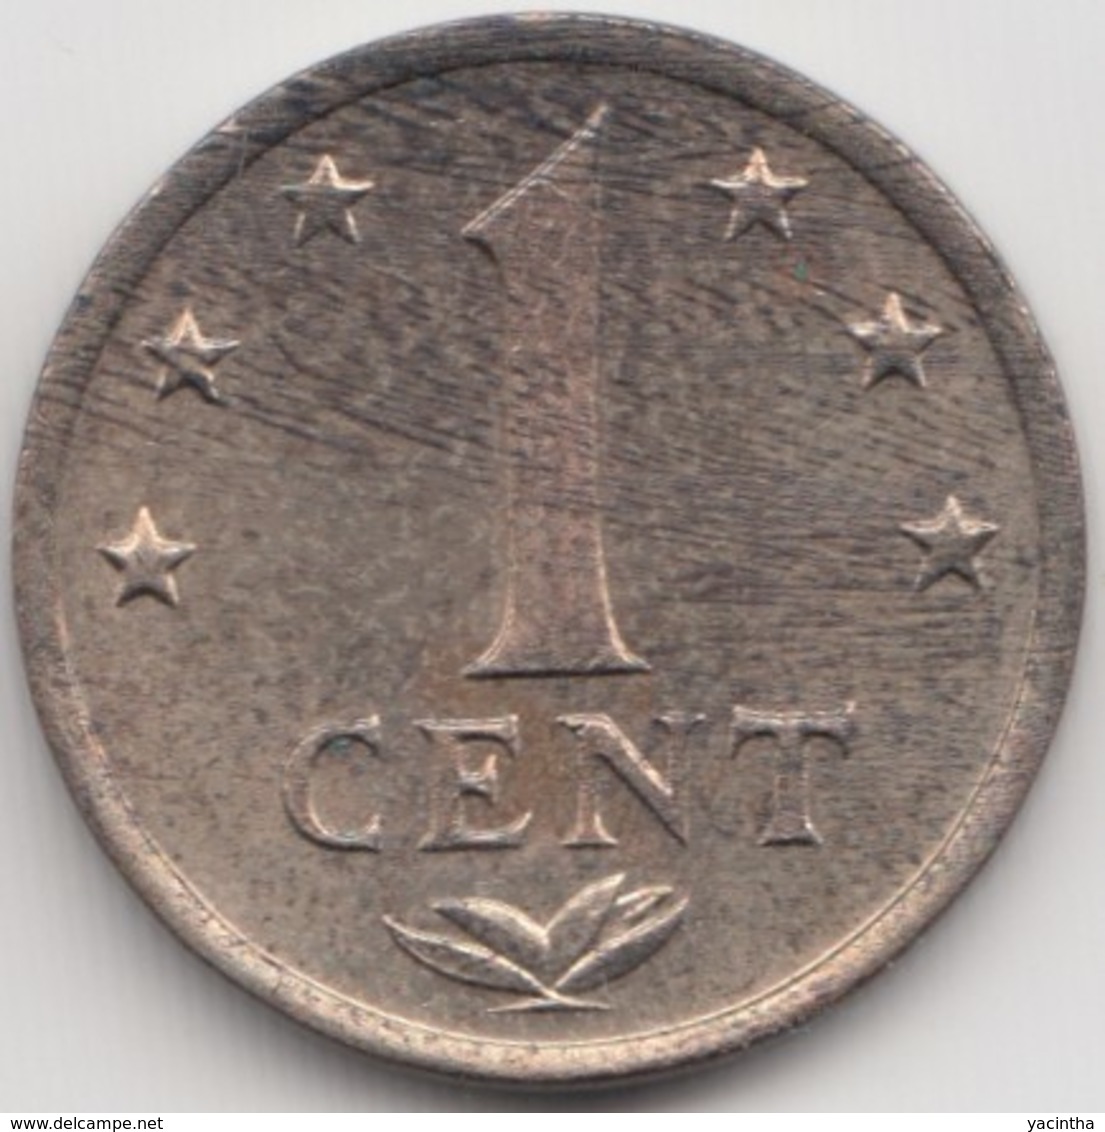 @Y@    Nederlandse Antillen  1  Cent  1978   ( 4599 ) - Niederländische Antillen